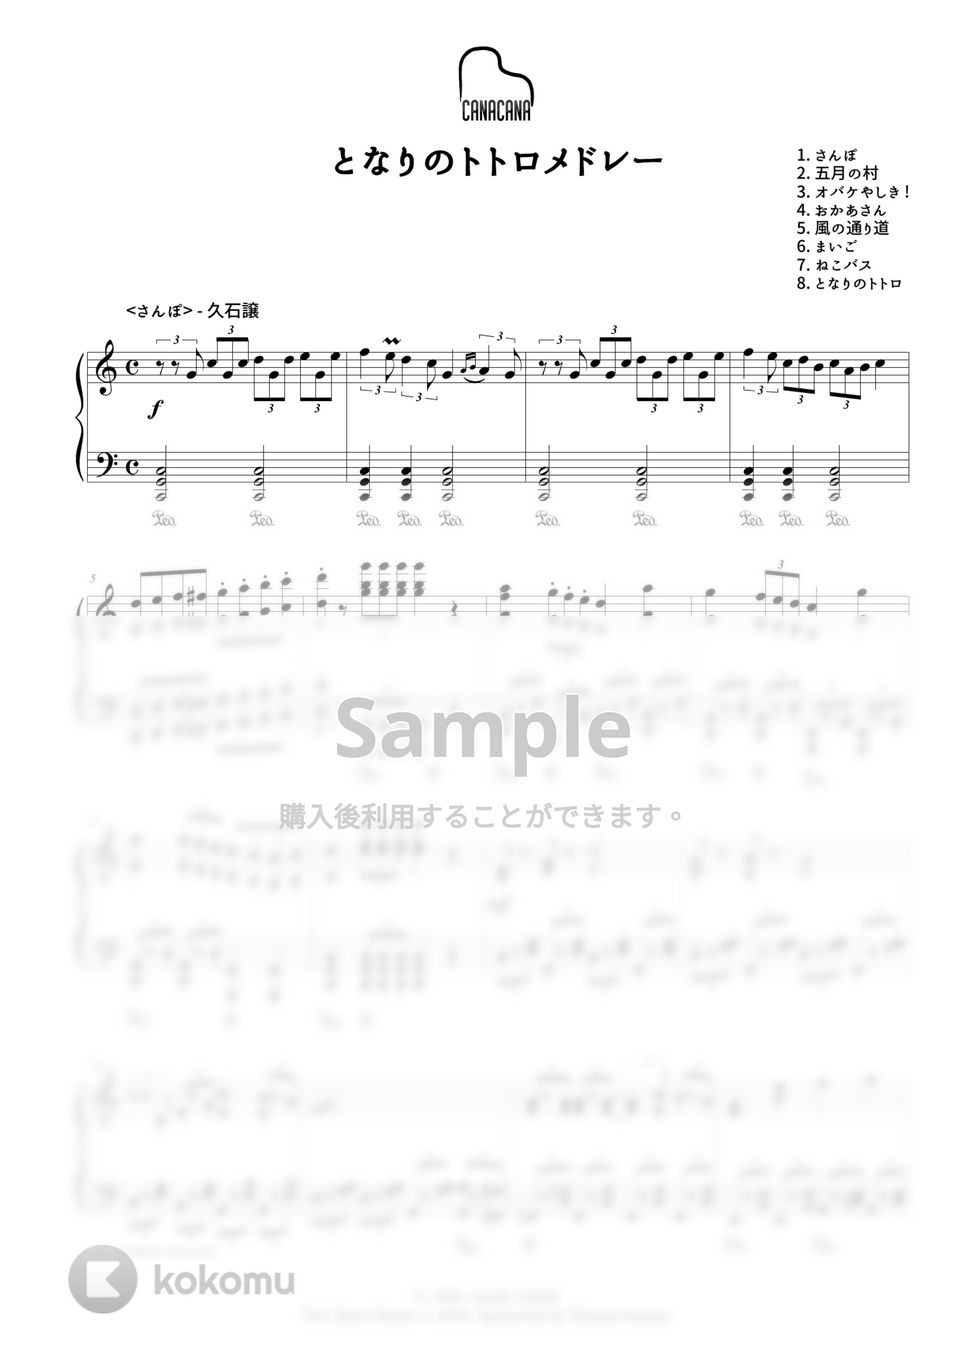 久石譲 - となりのトトロ８曲メドレー by CANACANA family